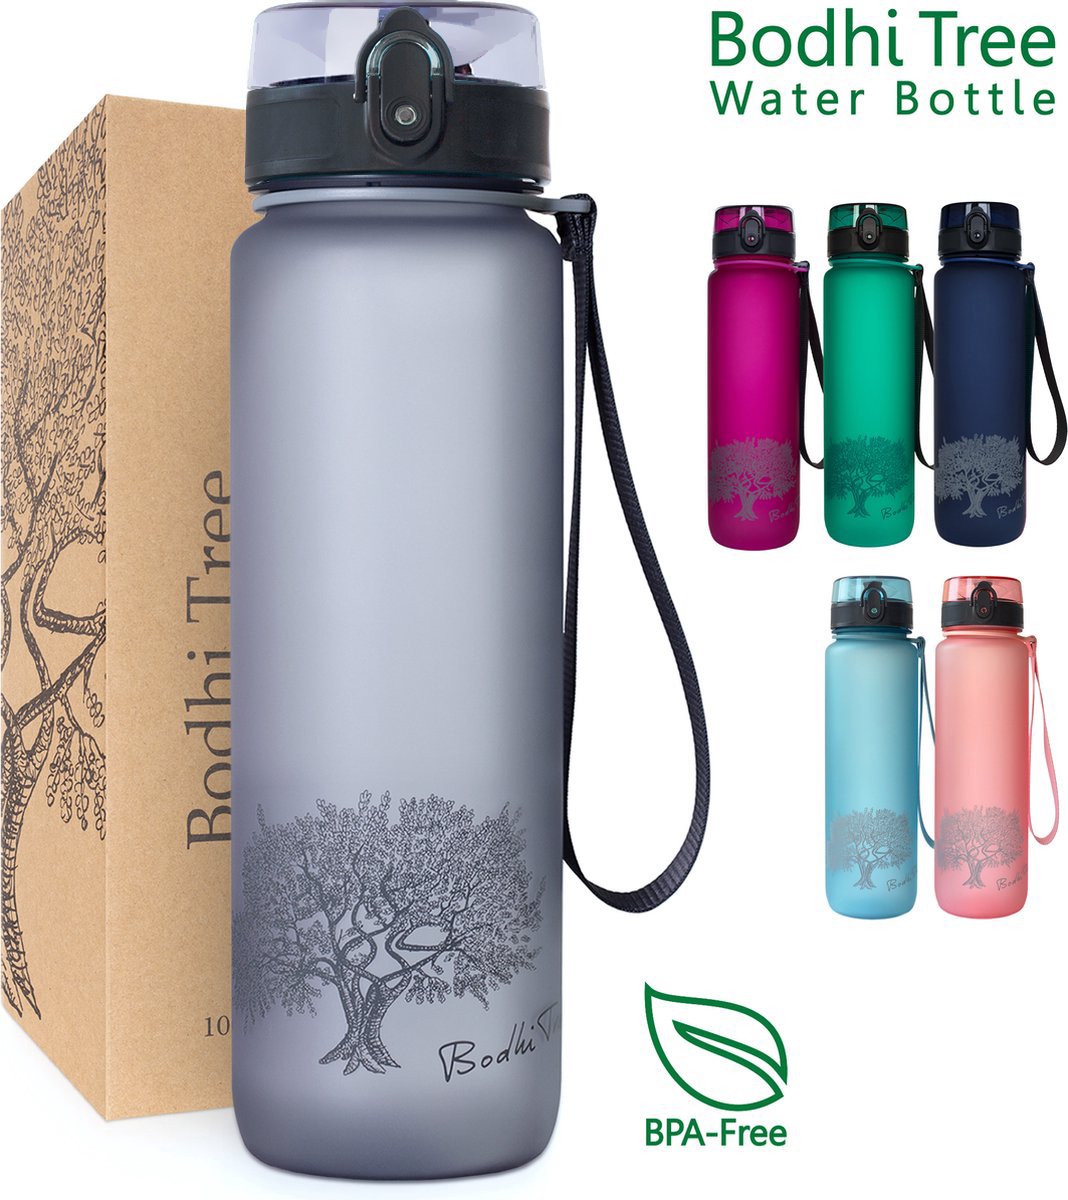 Bodhi Tree Drinkfles 1 Liter - Waterfles Volwassenen - BPA vrij - Sportfles - Bidon 1l - Sports Water Bottle - Grijs - Bodhi Tree